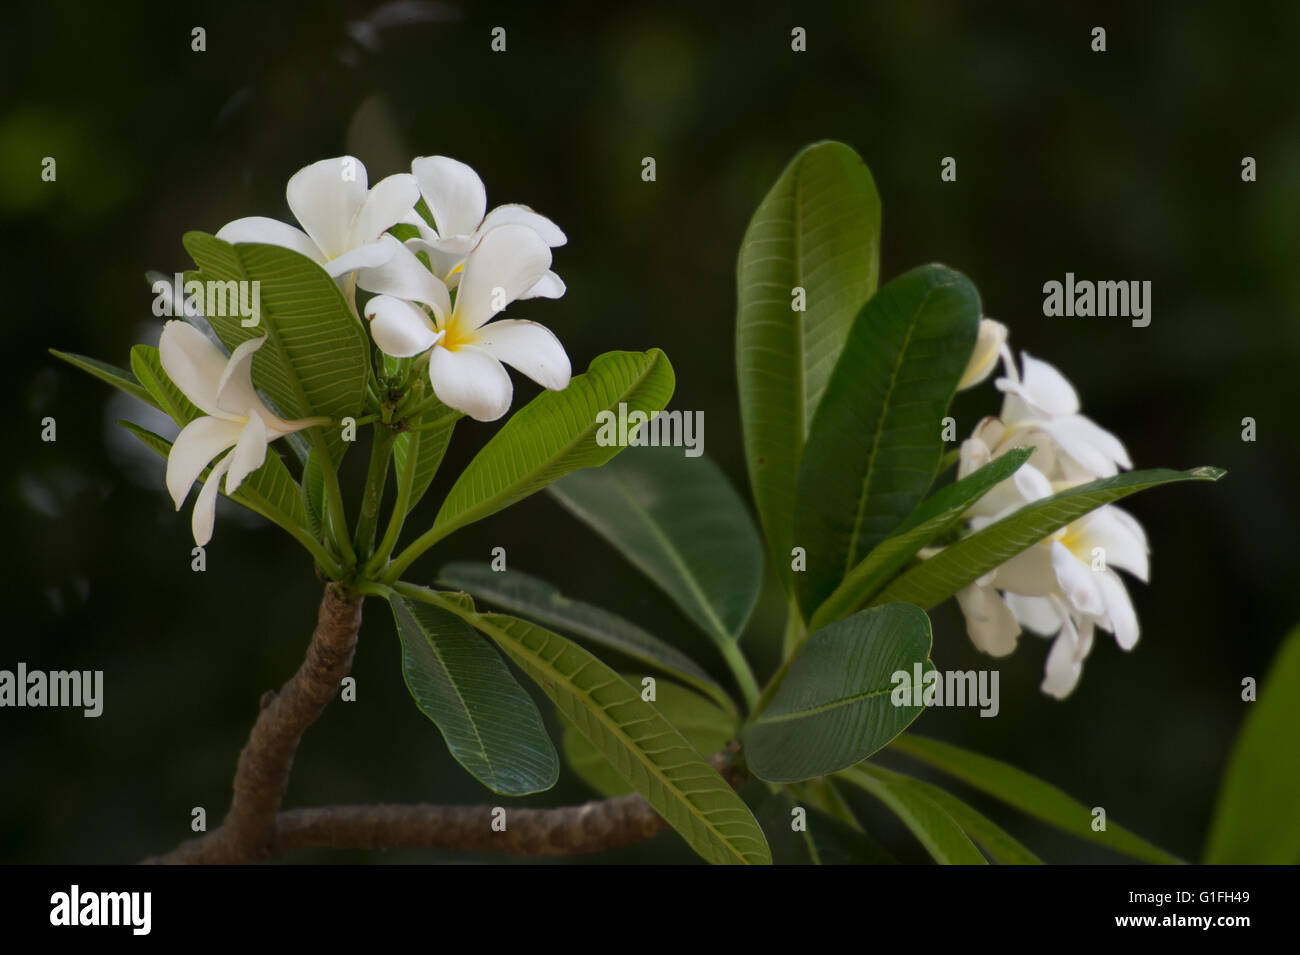 Flowers of White Frangipani, Plumeria obtusa, Apocynaceae, West Indies Stock Photo